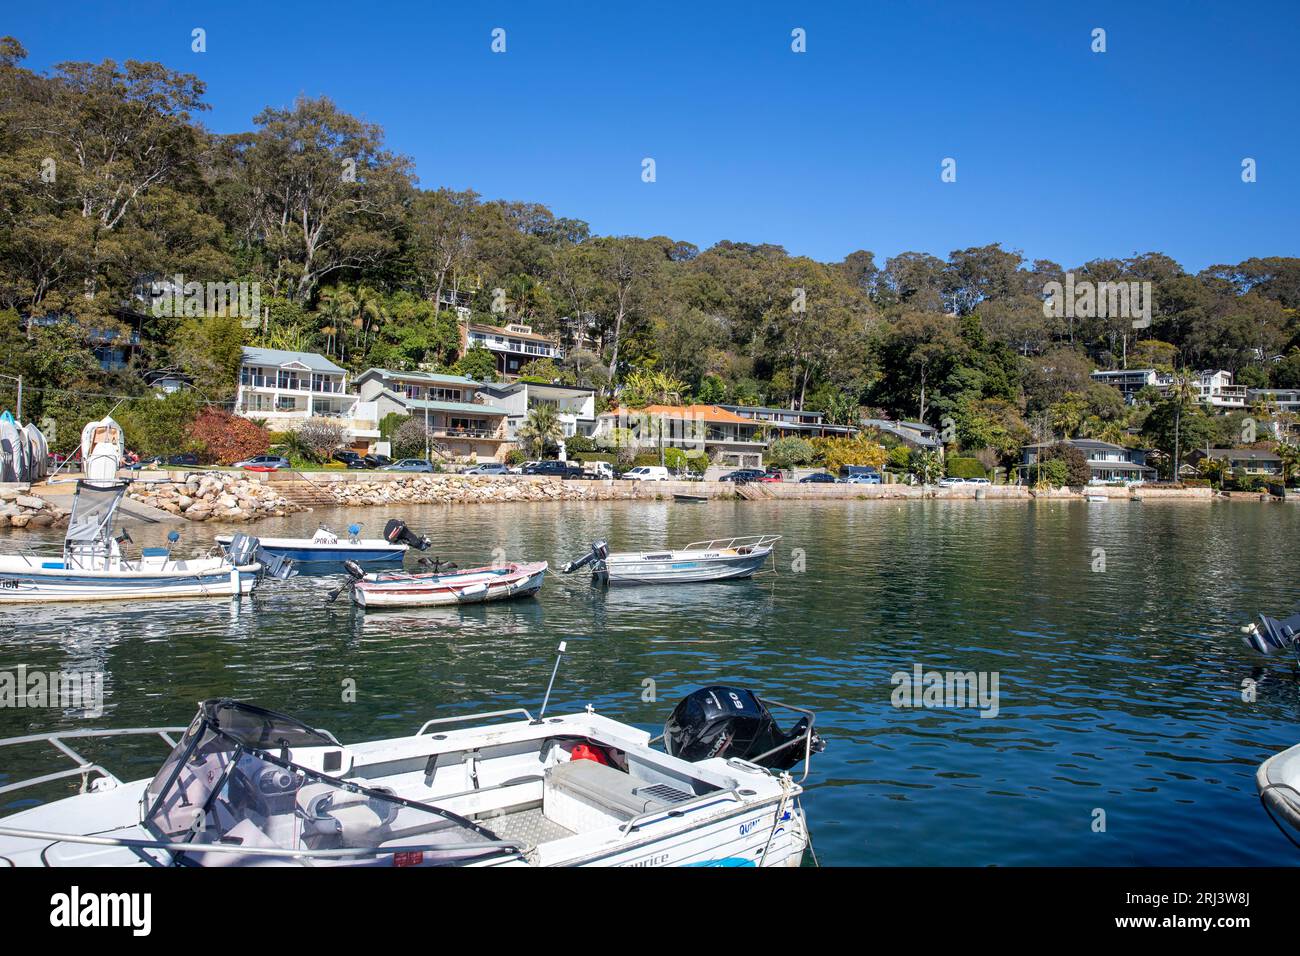 Le case sul lungomare di Sydney, Australia, e la proprietà a Careel Bay, Avalon Beach si affacciano su Pittwater e piccole barche, New South Wales, Australia Foto Stock